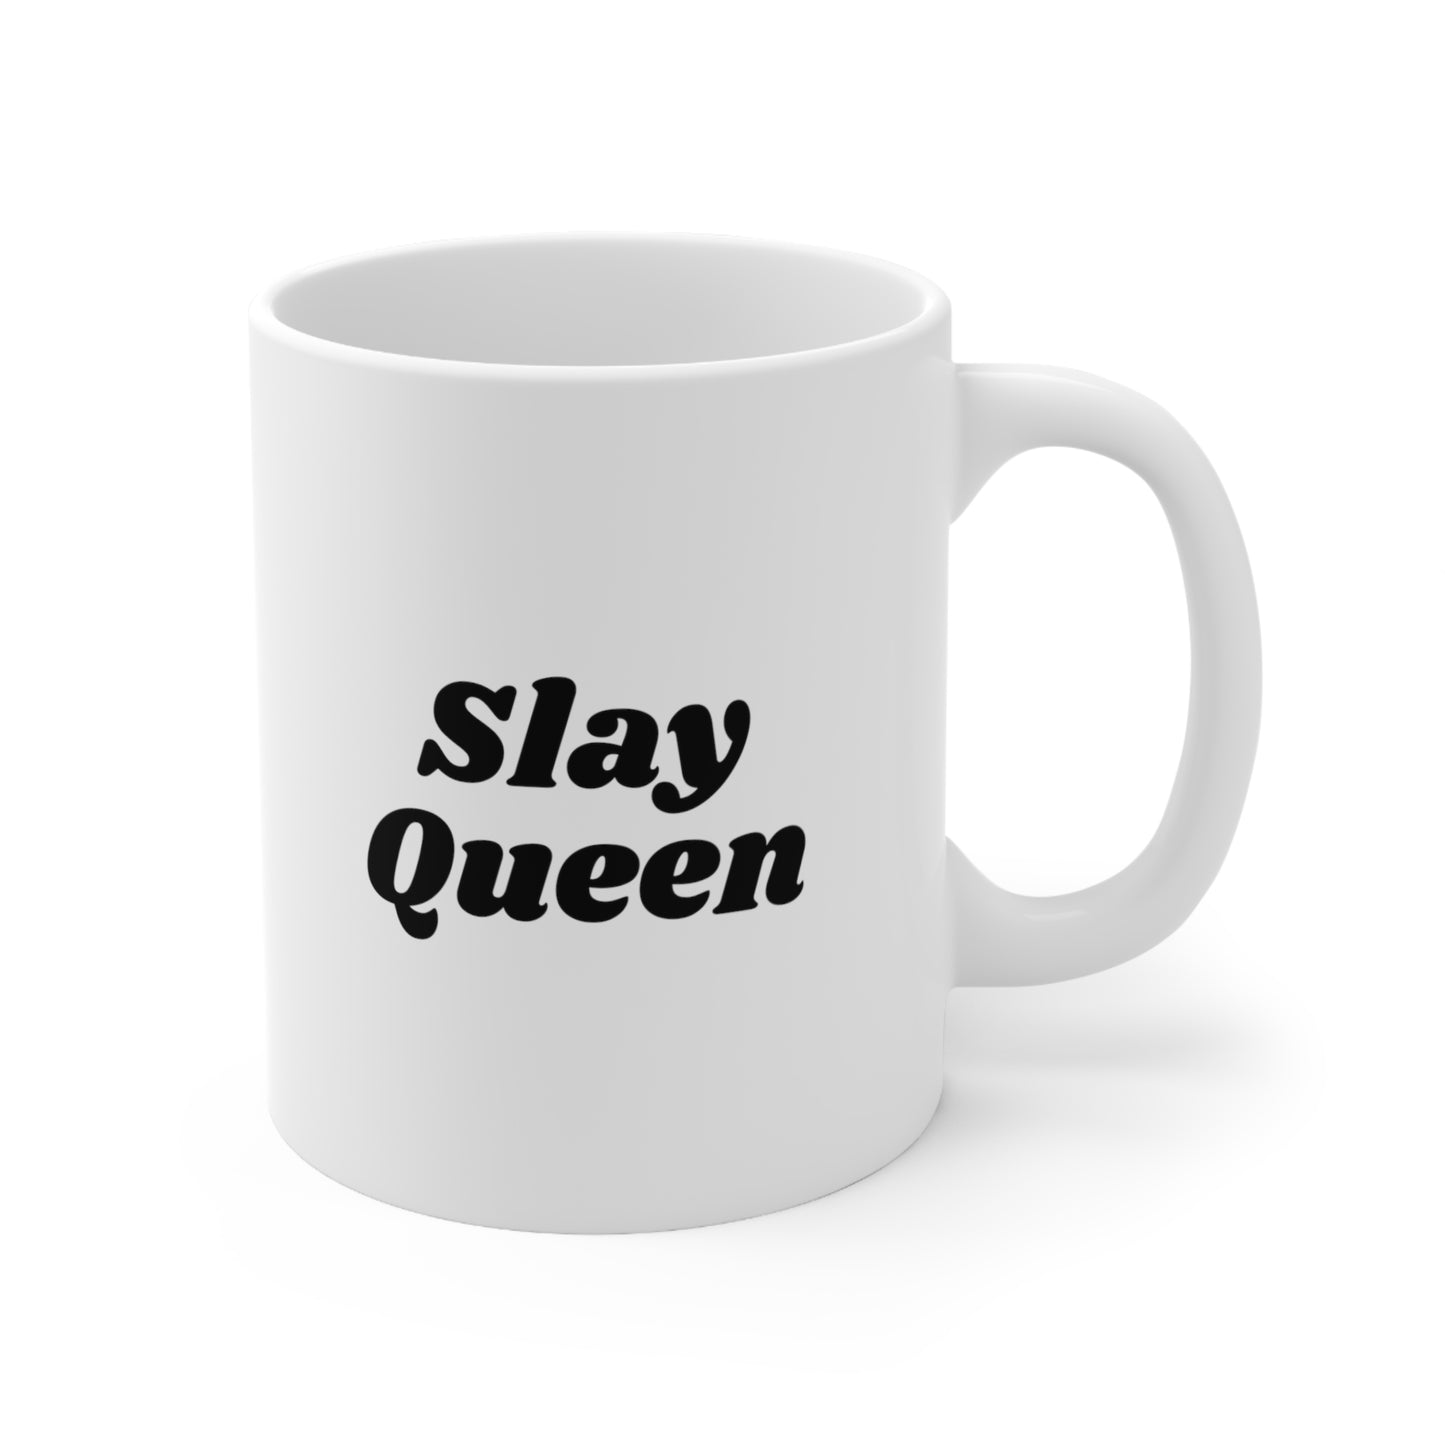 Slay Queen Coffee Mug 11oz